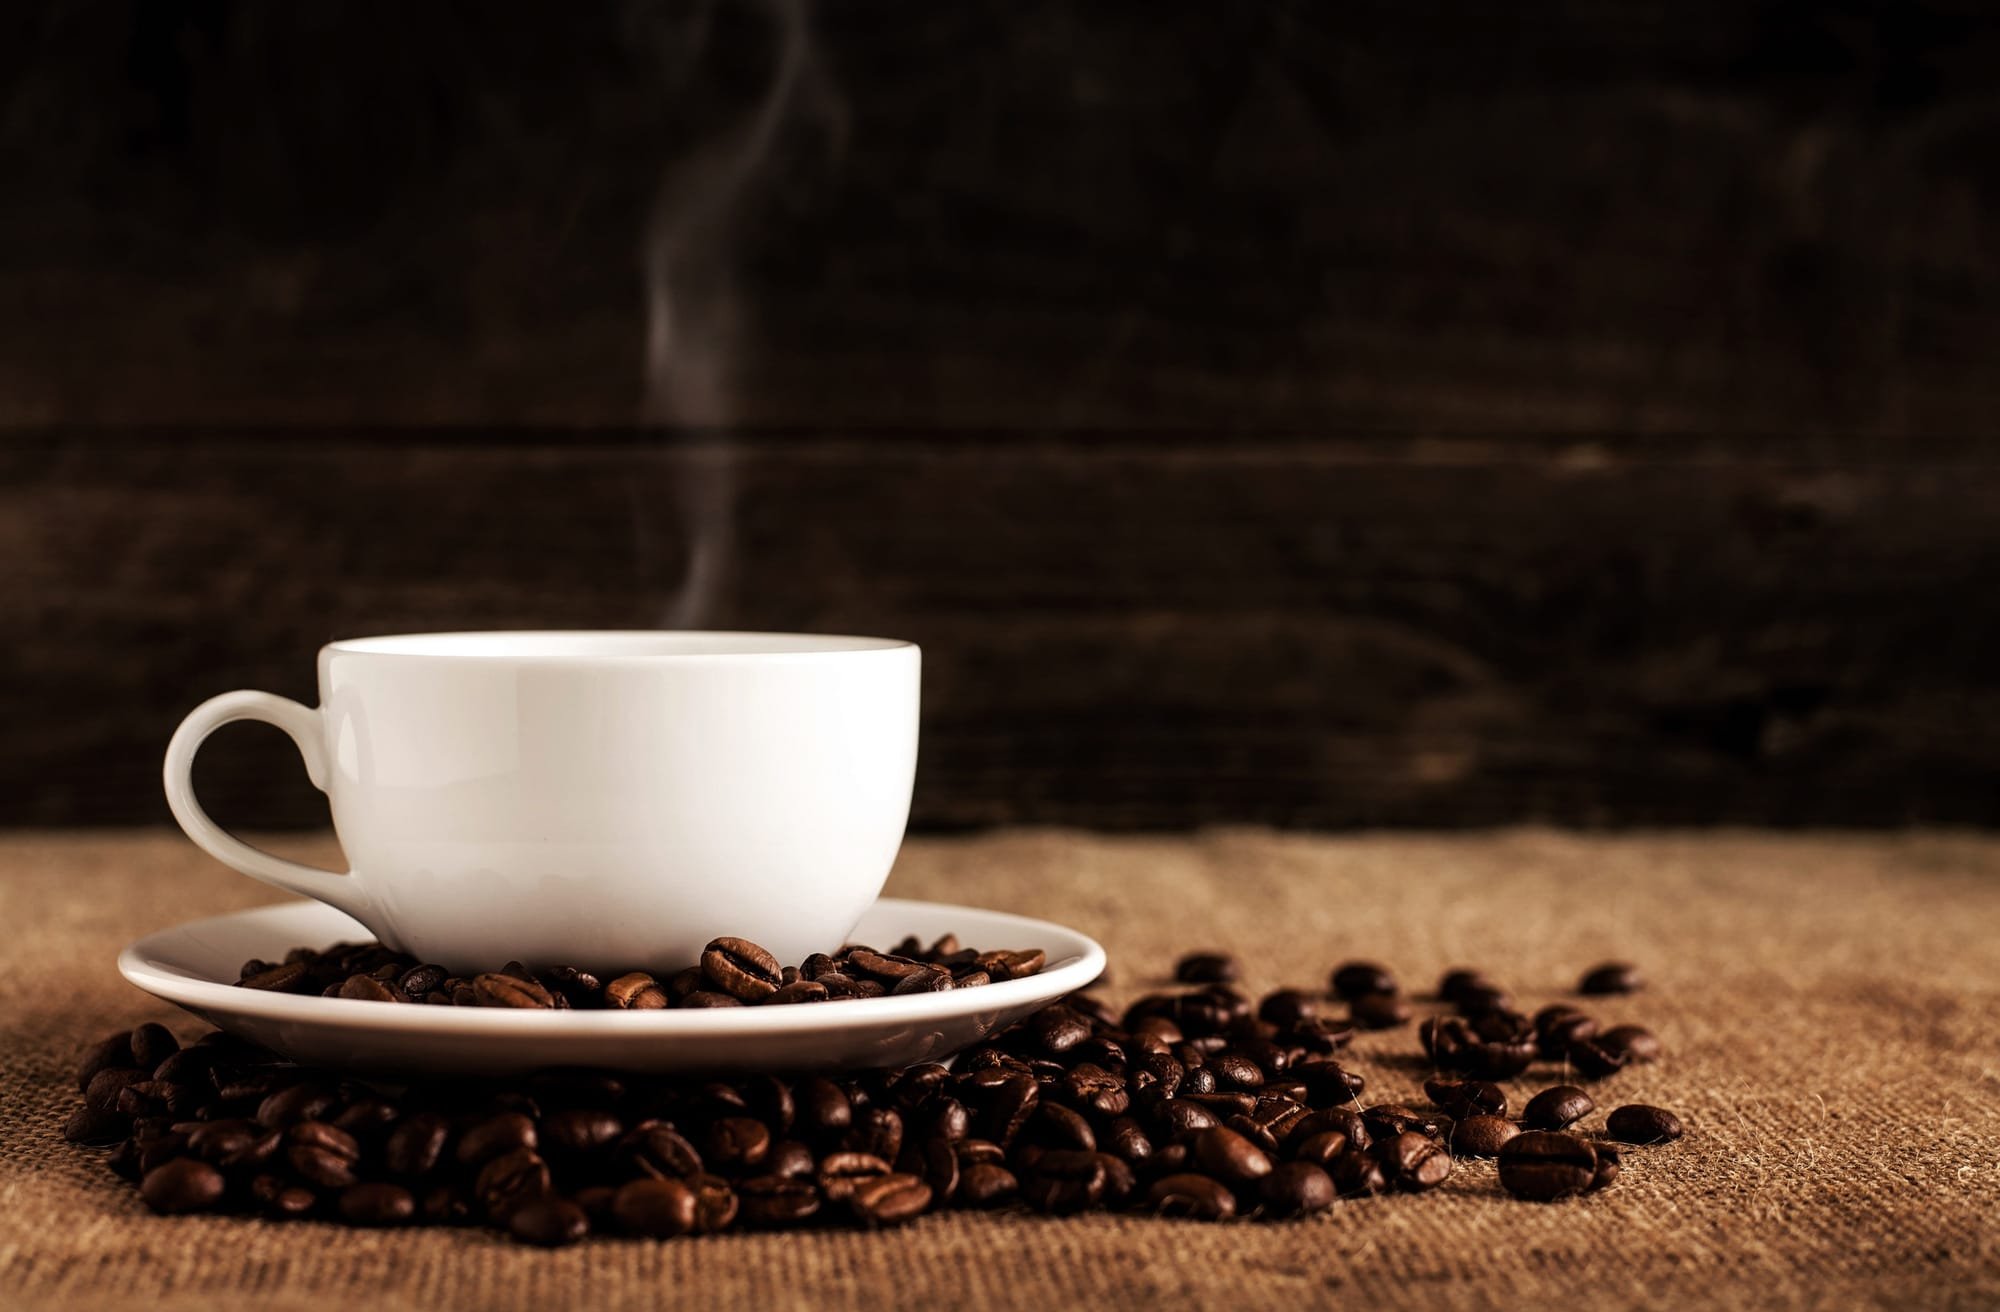 دراسة تكشف فائدة كبيرة للمواظبة على شرب القهوة